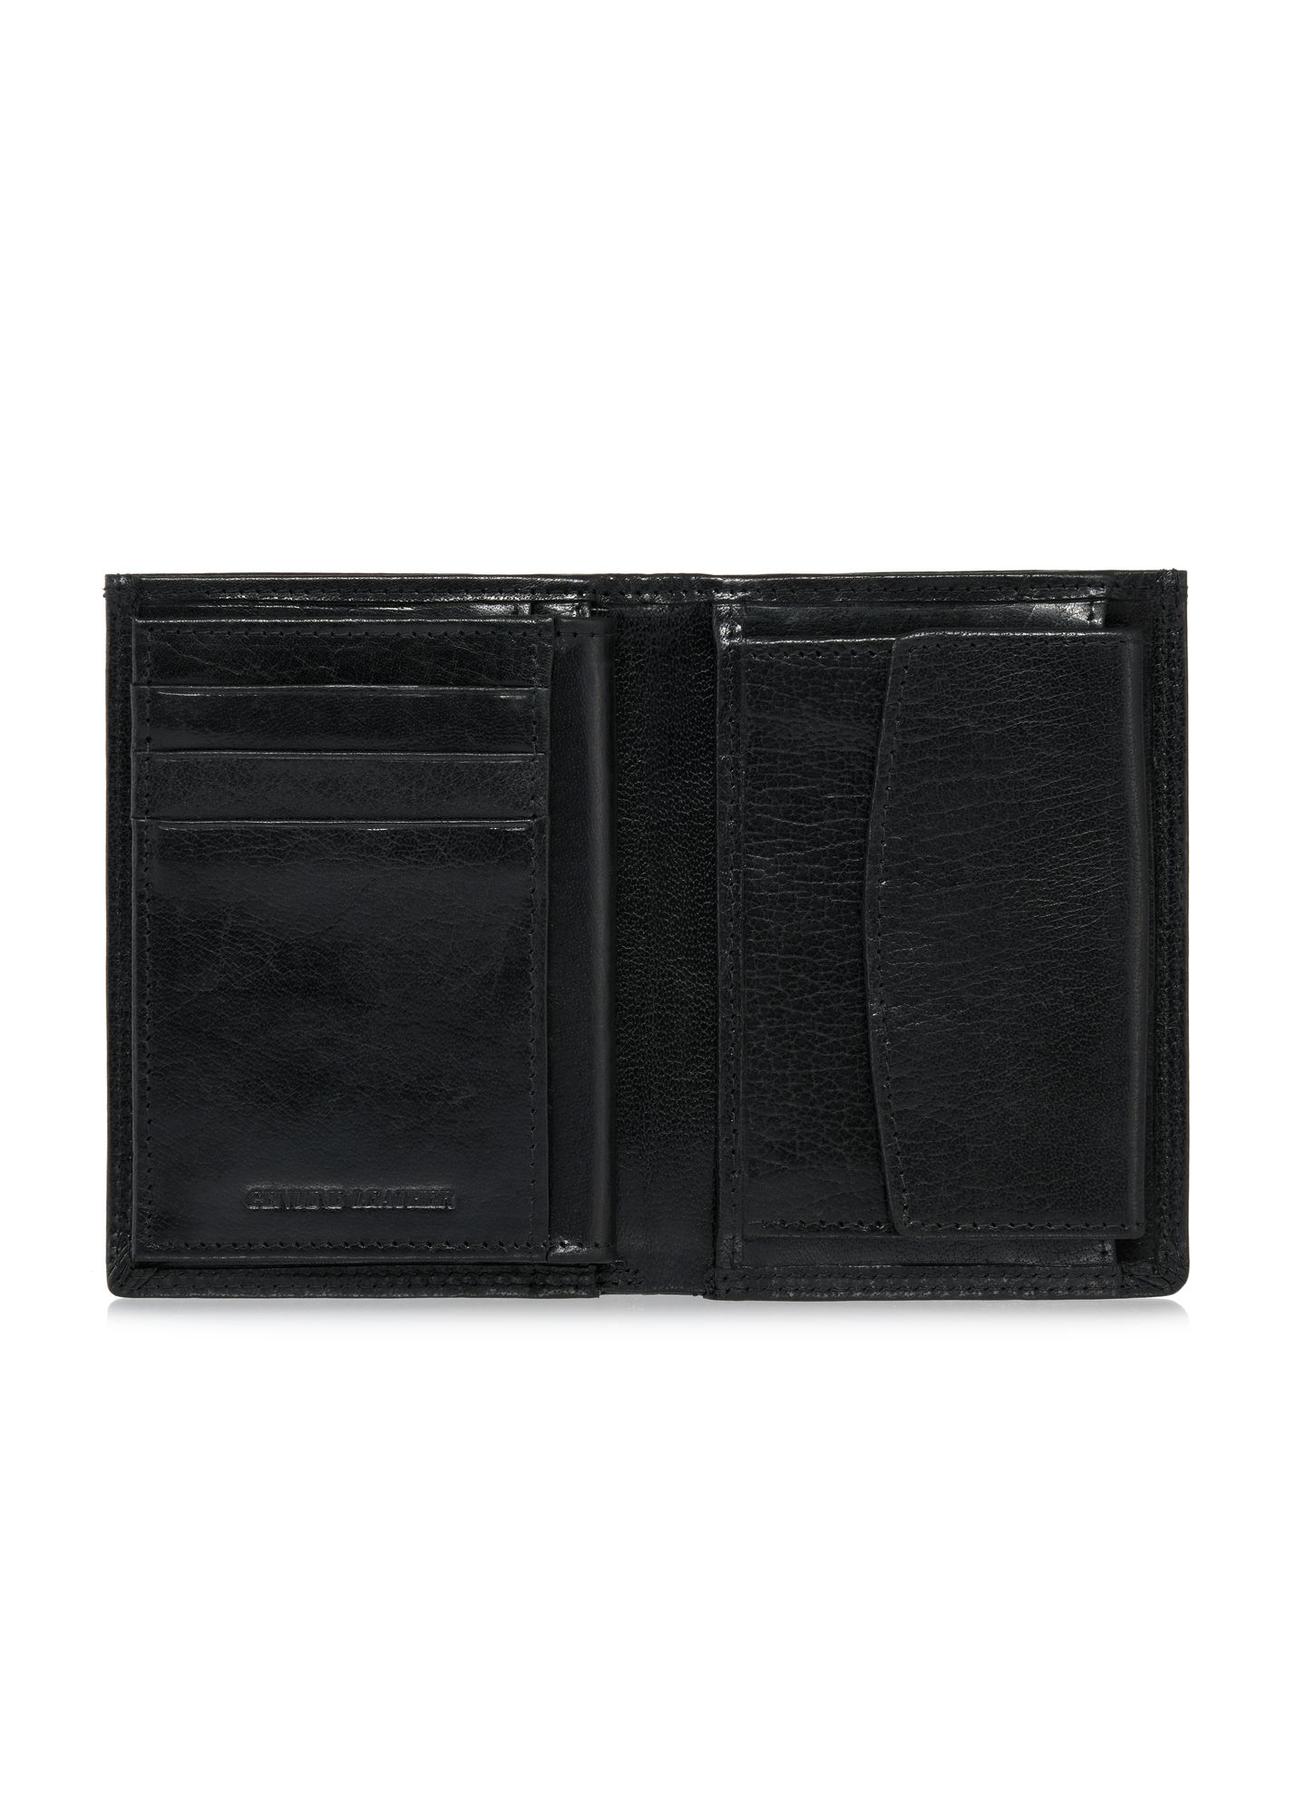 Skórzany niezapinany czarny portfel męski PORMS-0554-99(W24)